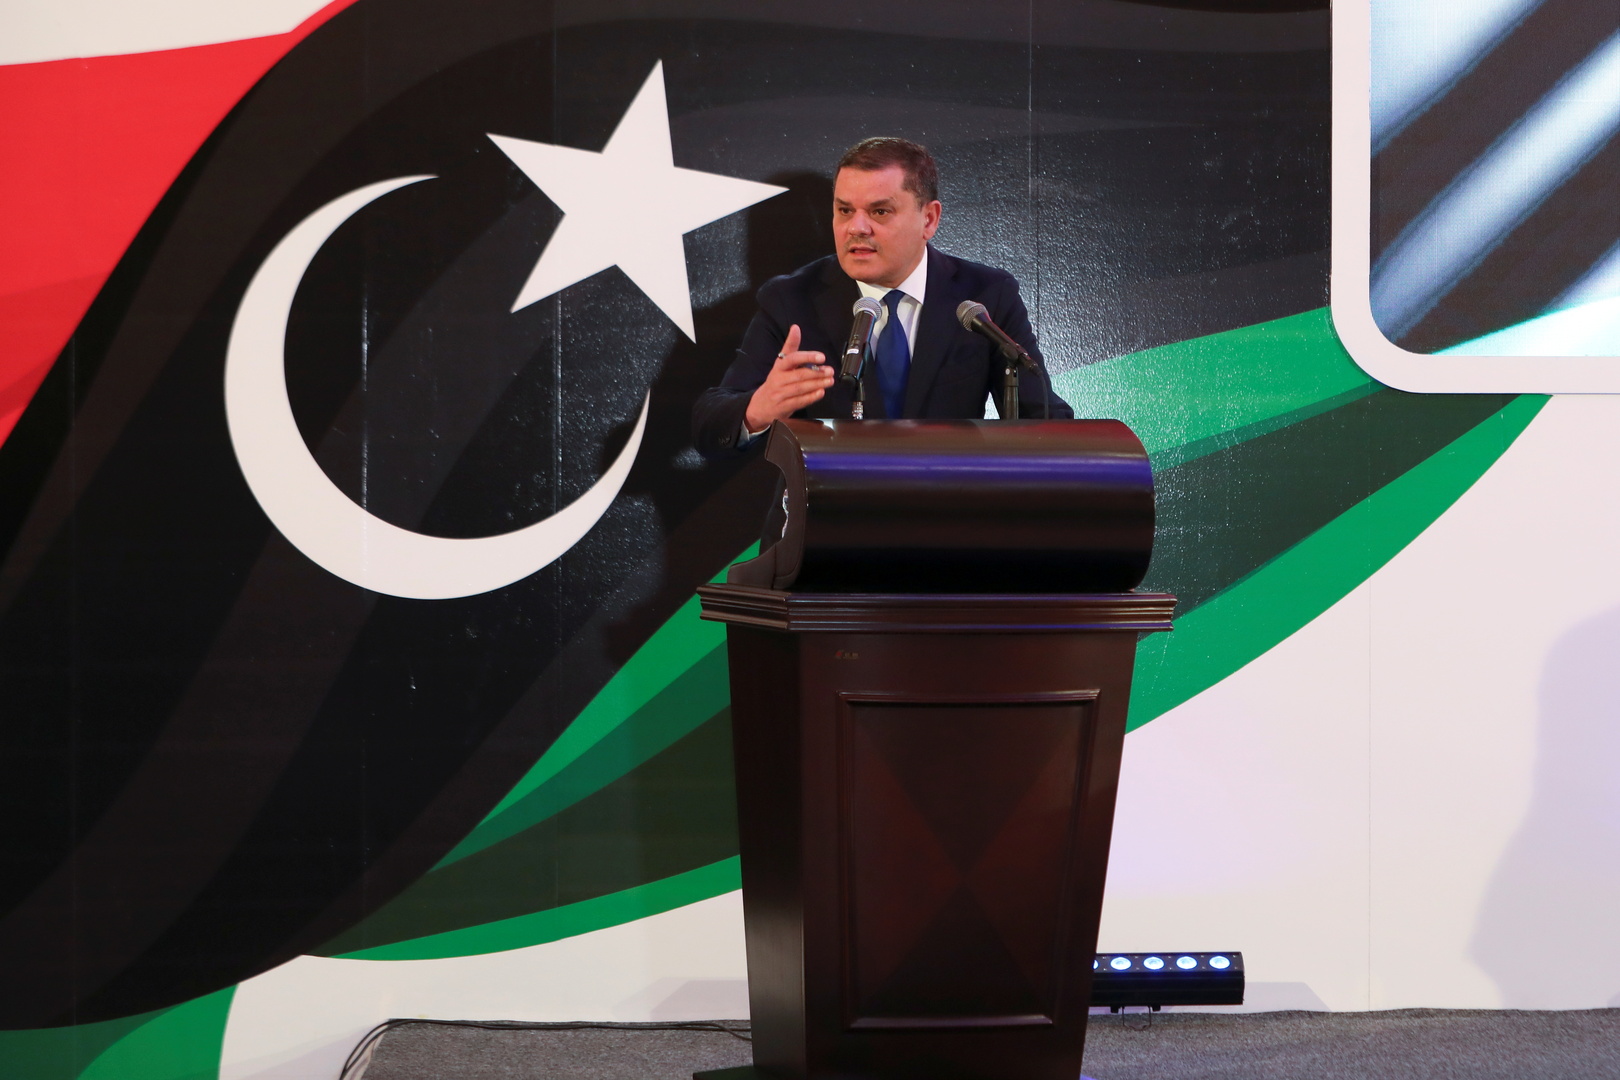 رئيس وزراء ليبيا المعين يقترح تشكيل حكومة وحدة كبيرة